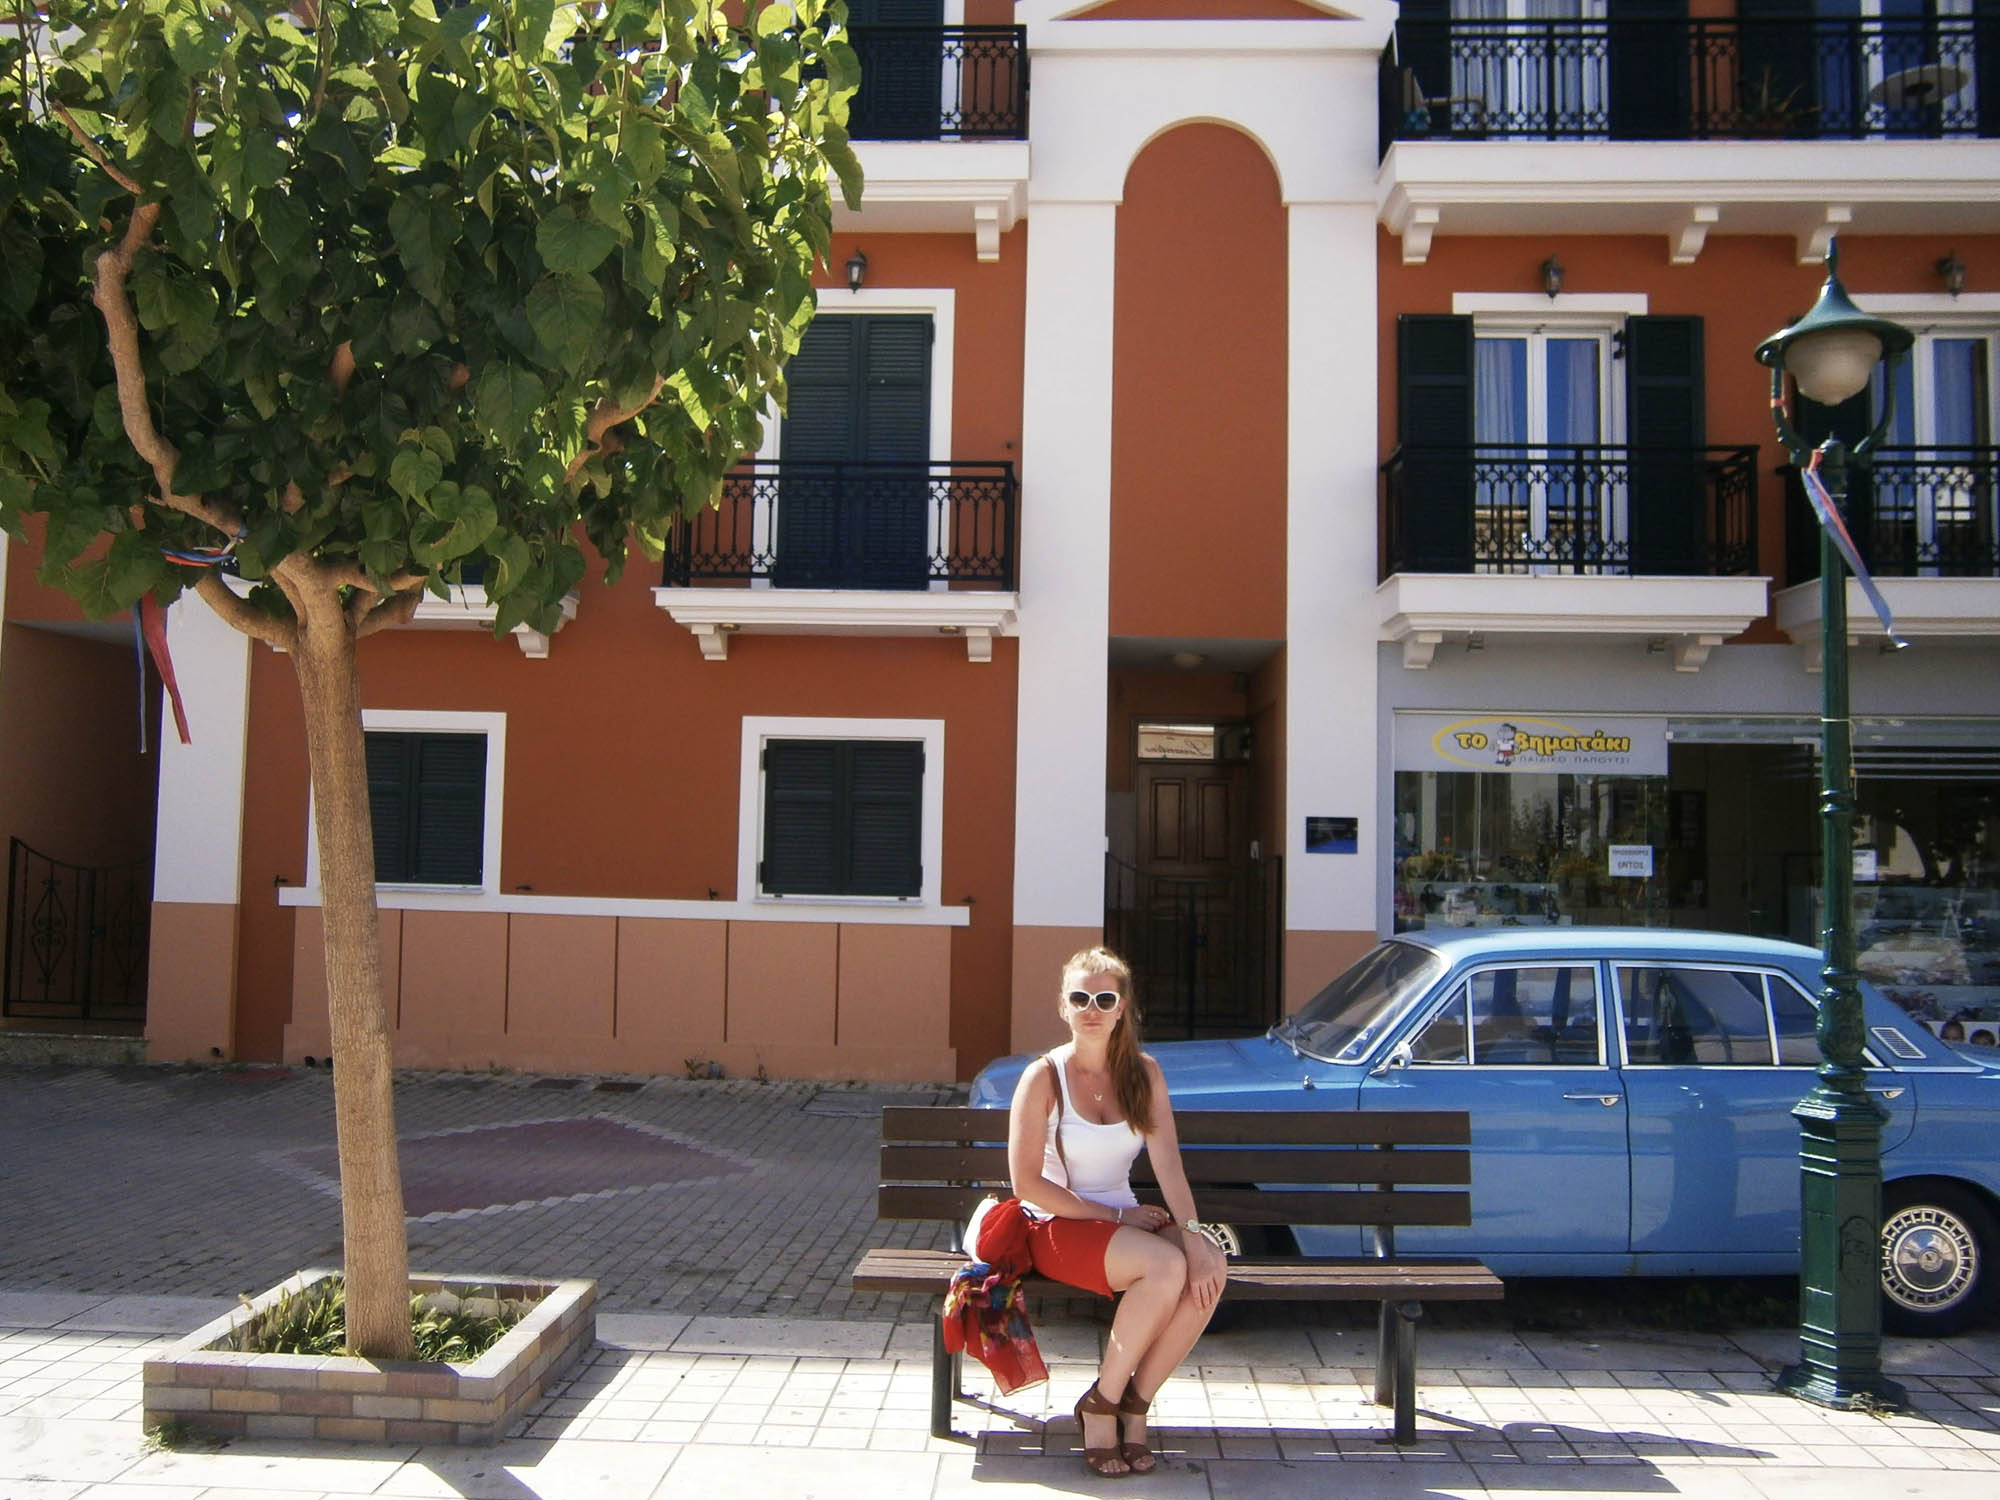 agrostoli, miasto na kefalonii, dziewczyna siedząca na ławce